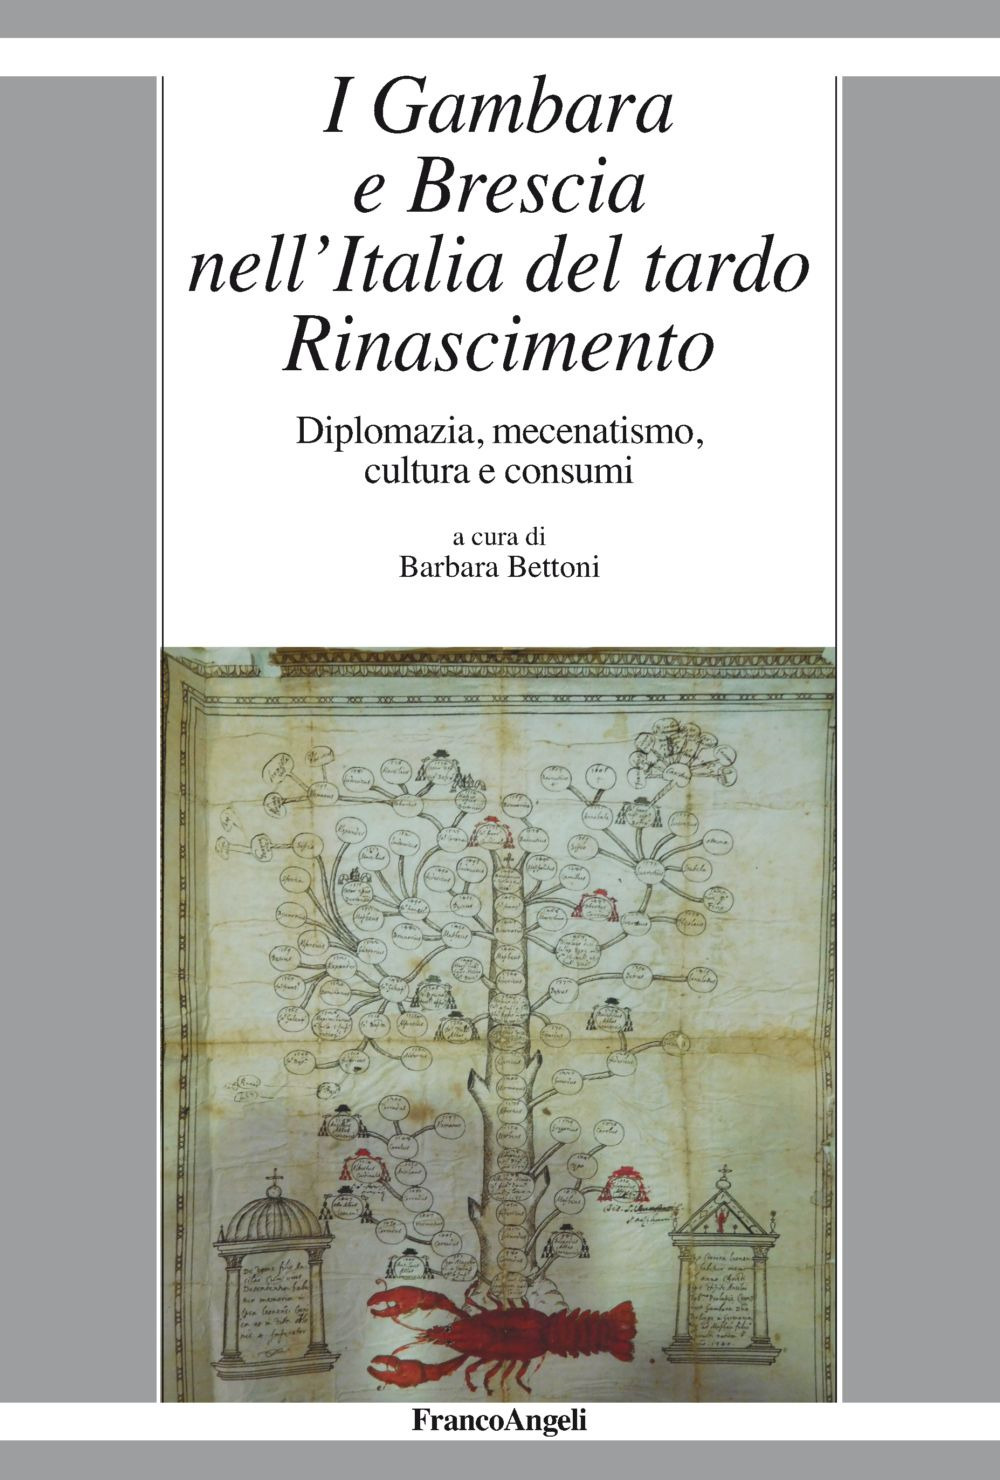 Image of I Gambara e Brescia nell'Italia del tardo Rinascimento. Diplomazia, mecenatismo, cultura e consumi